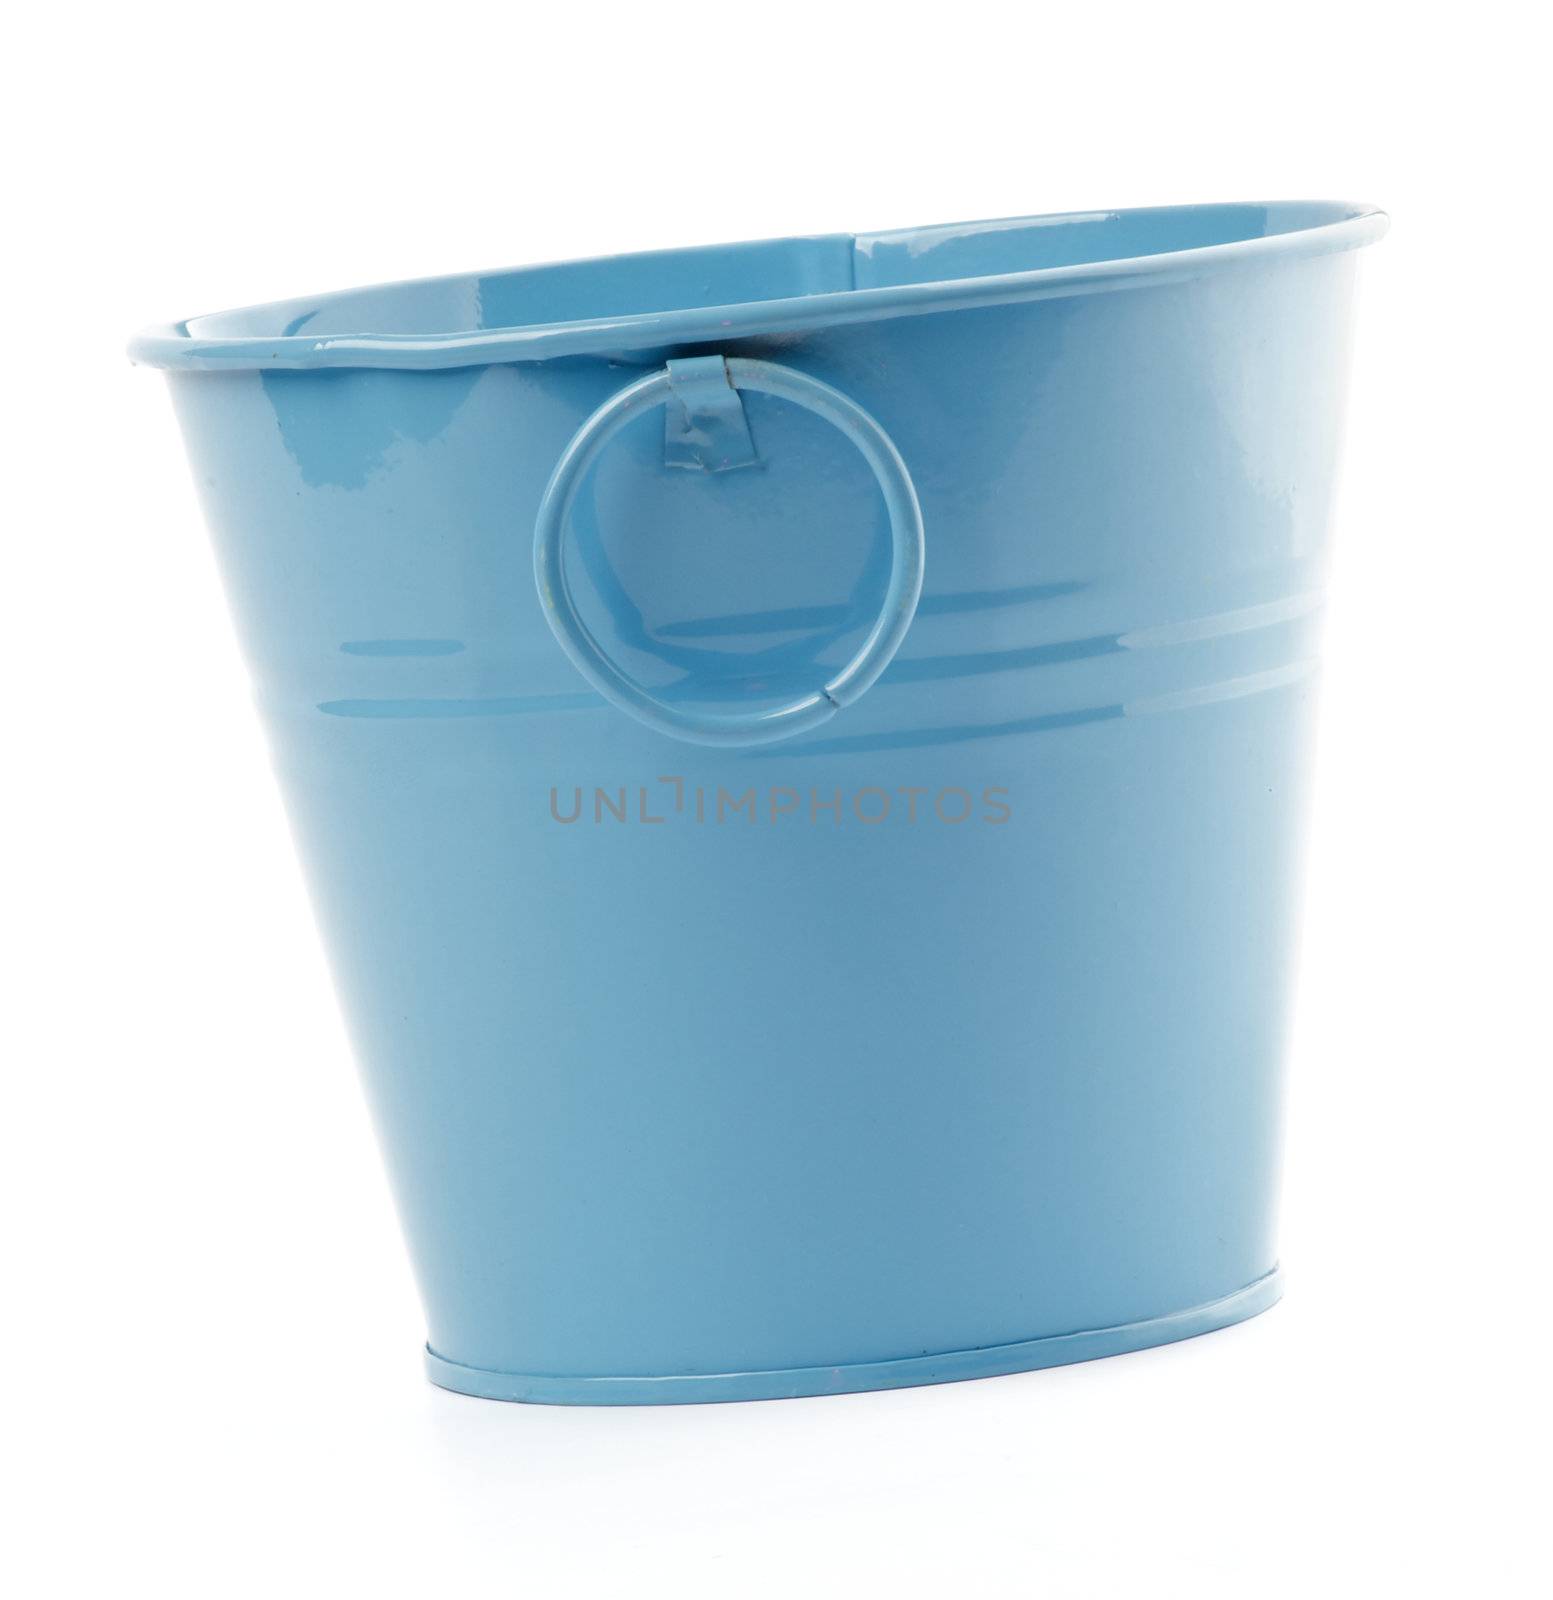 Blue Bucket isolated on white background